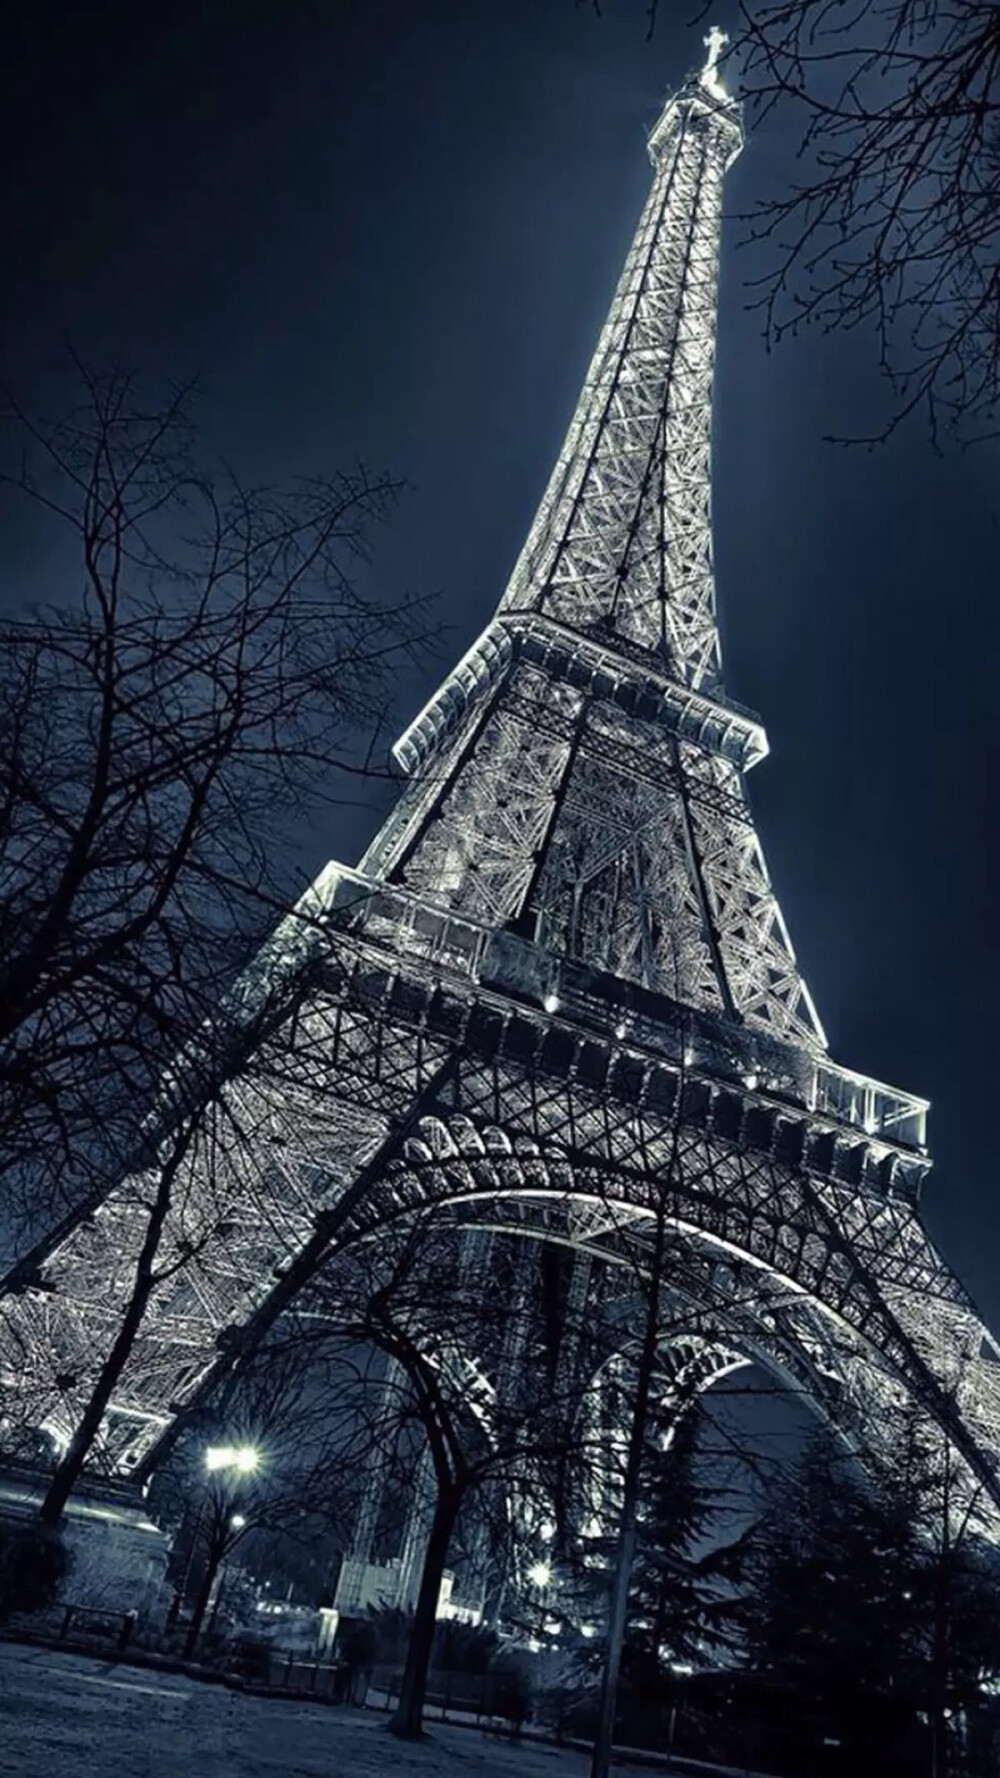 超清巴黎铁塔手机壁纸 搜狗图片搜索